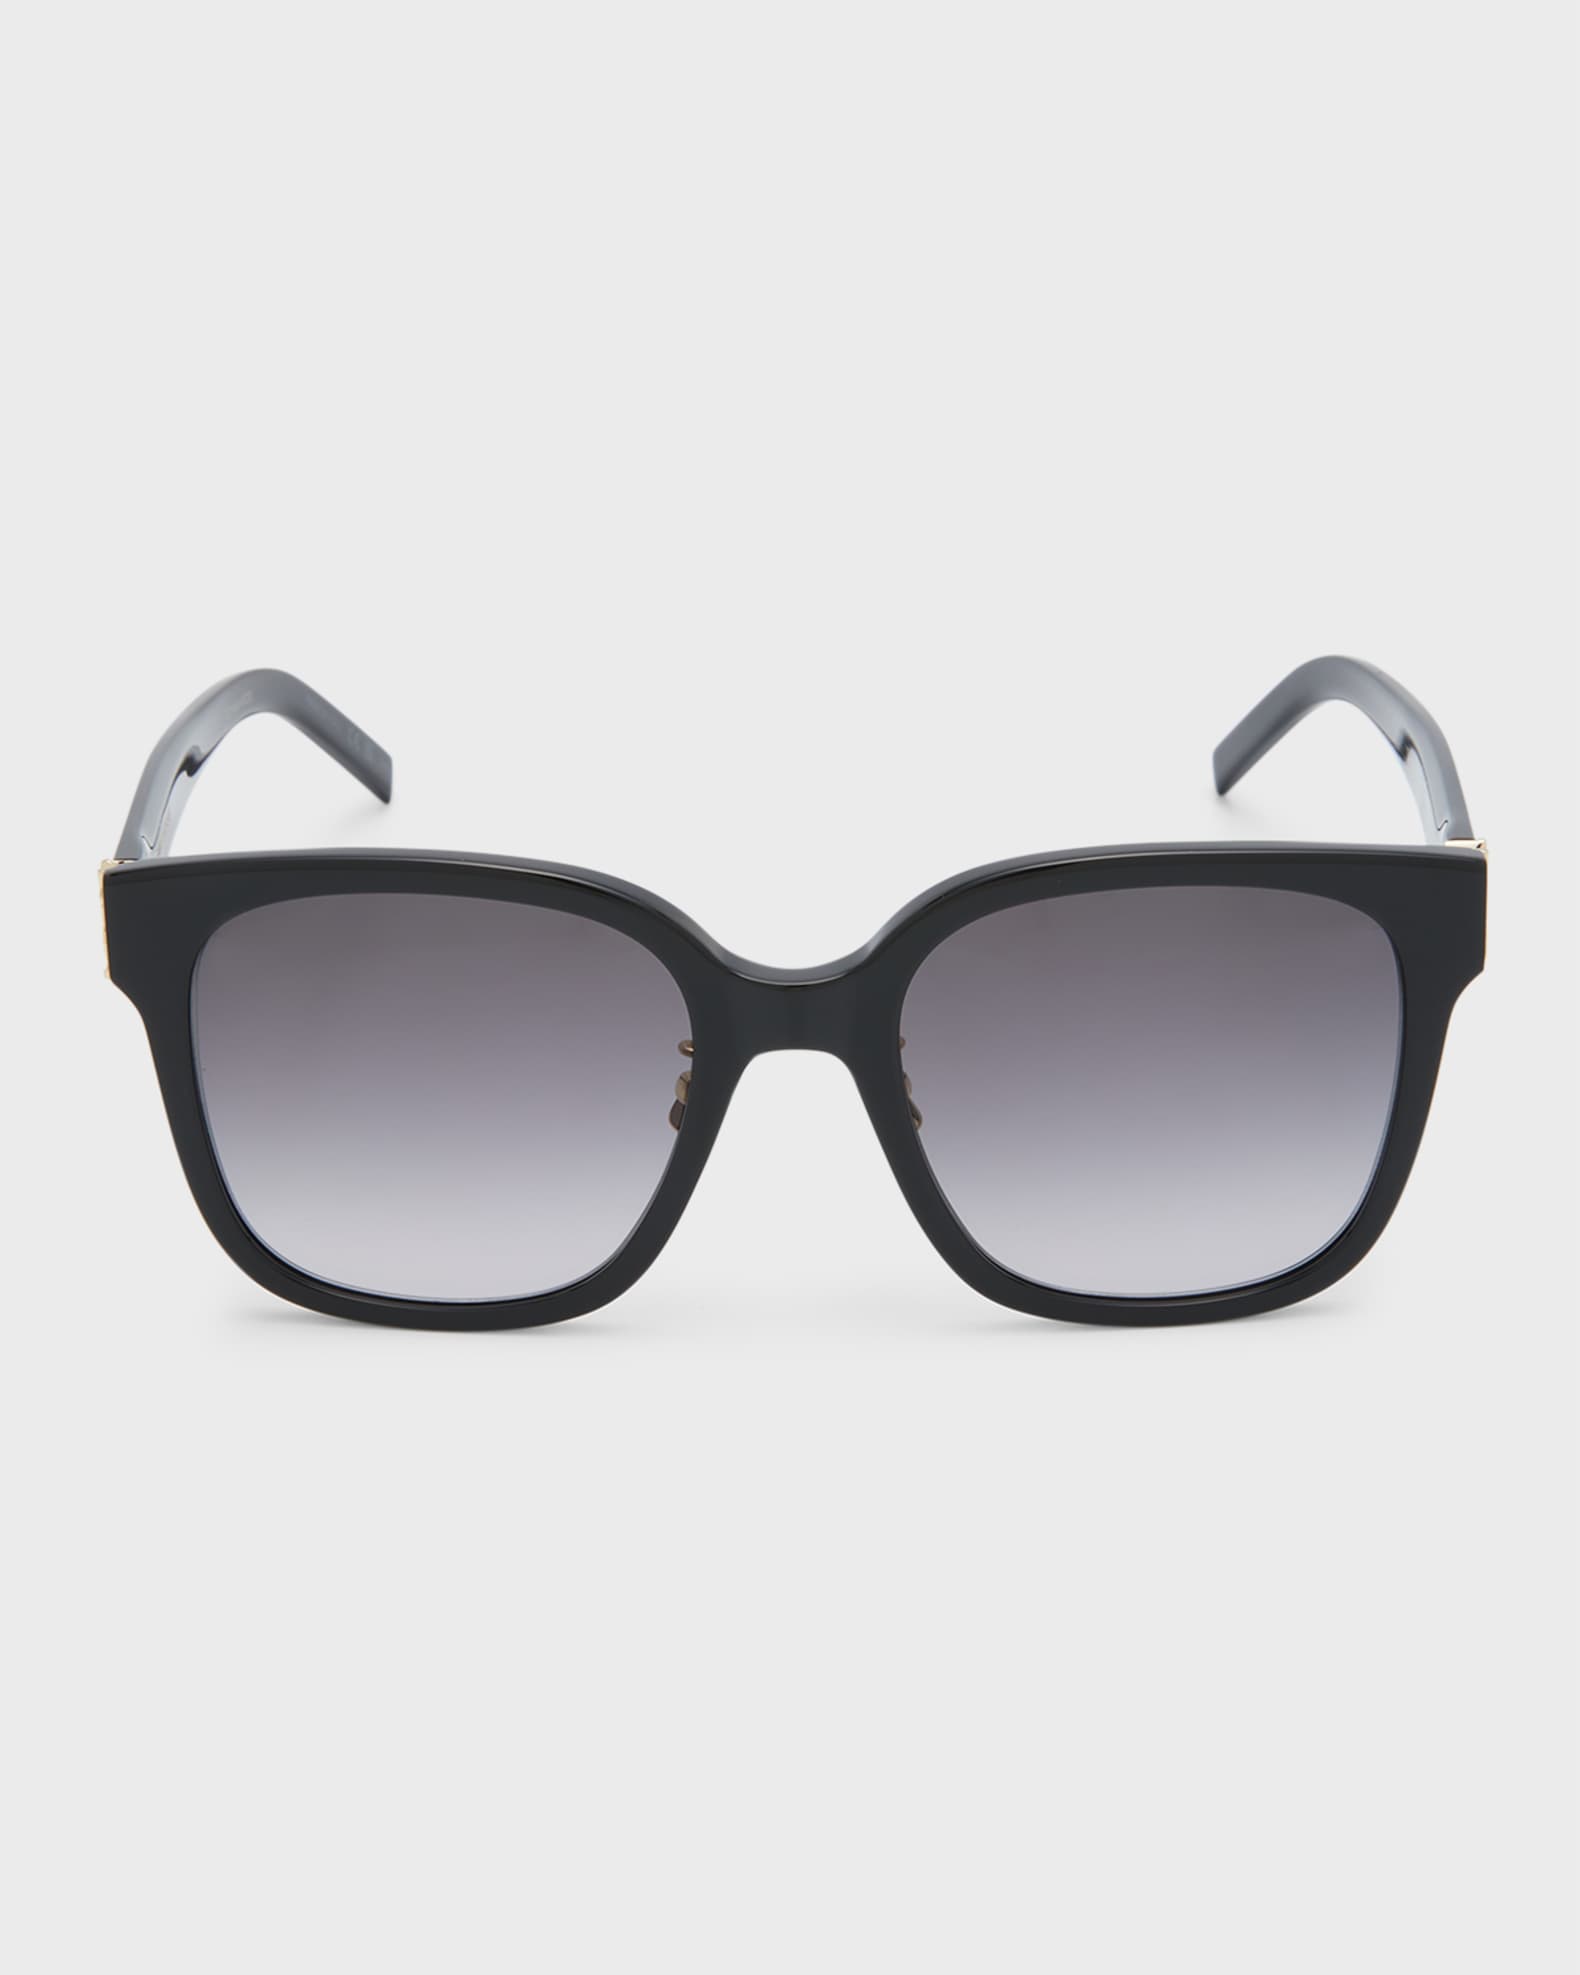 Saint Laurent YSL Square Acetate Sunglasses | Neiman Marcus